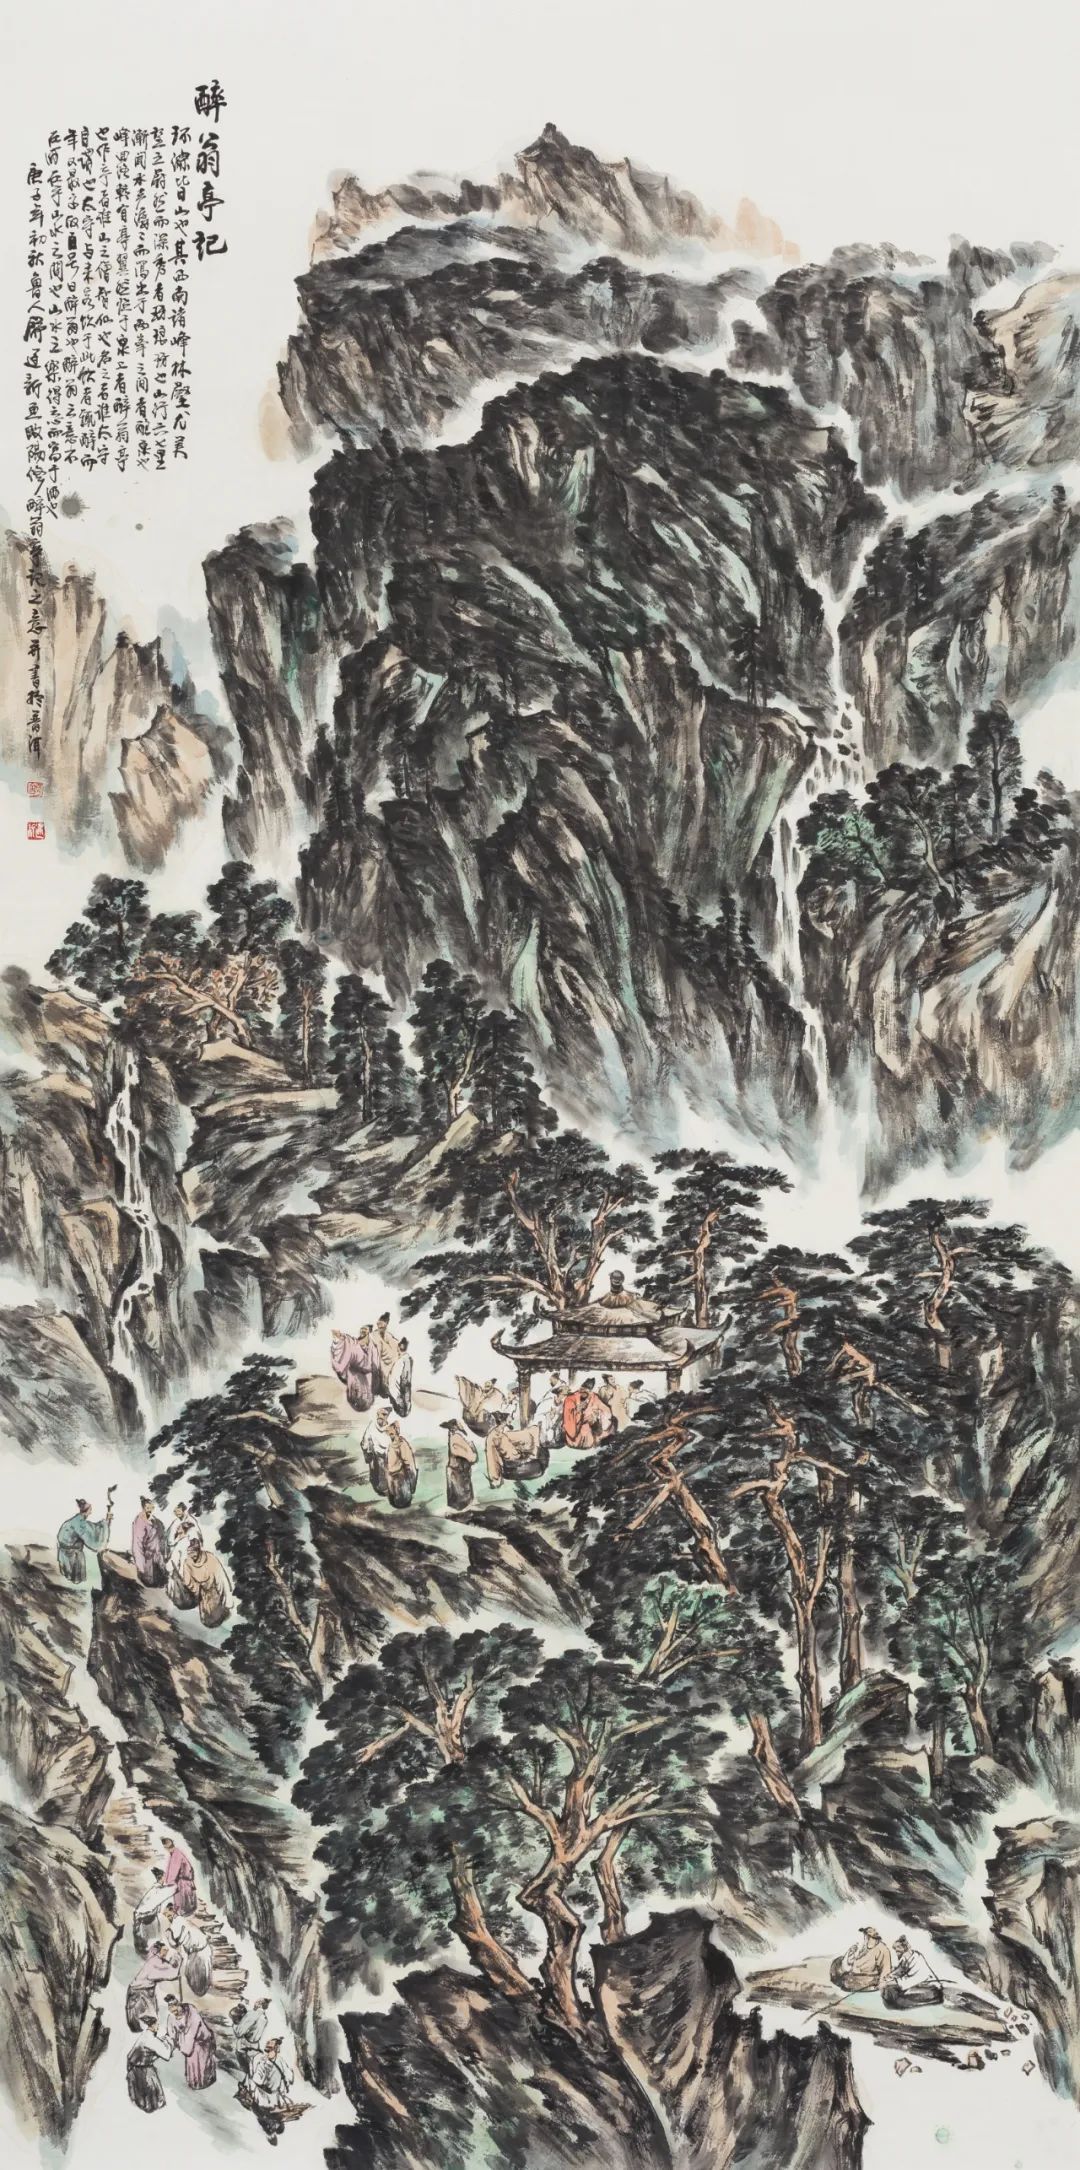 用艺术再颂黄河的精神丰碑——专访中国国家画院院长卢禹舜